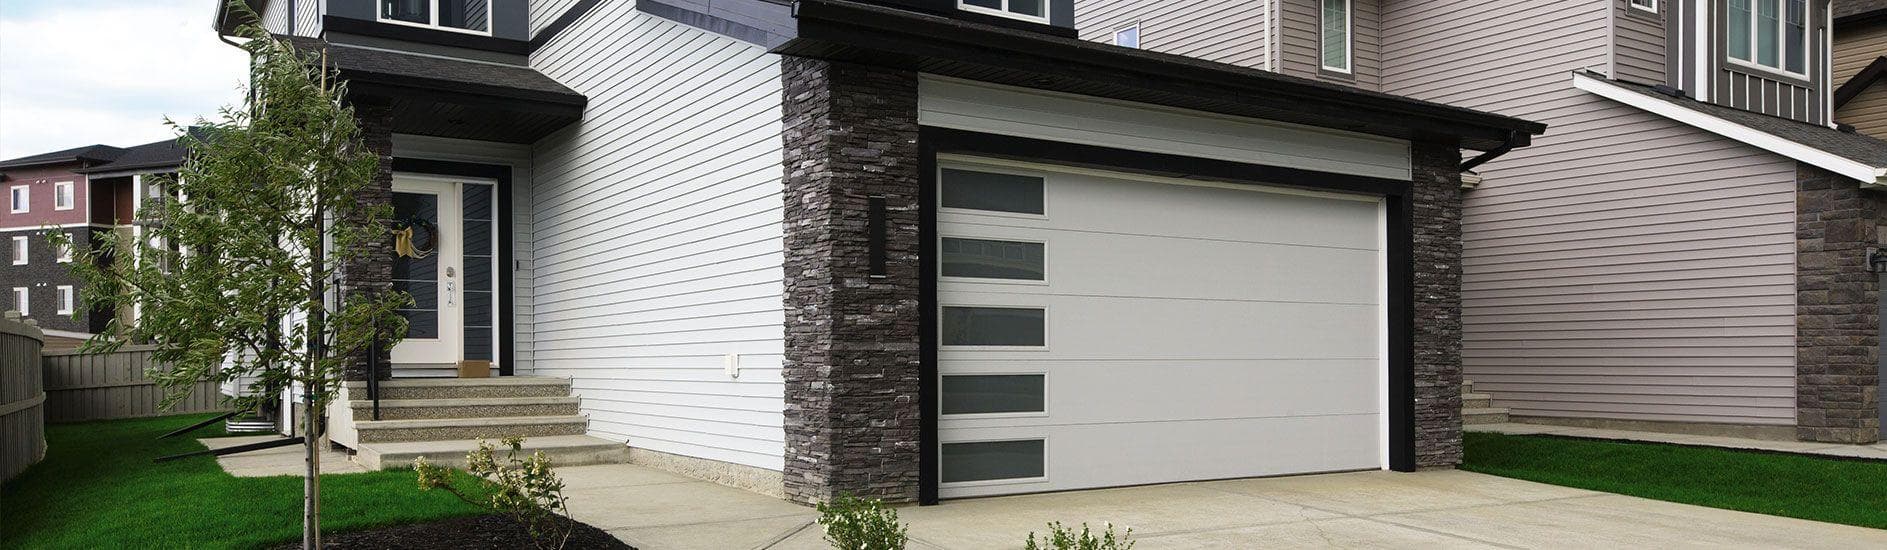 Steel-garage-door.jpeg?mtime=20200220123457#asset:16534